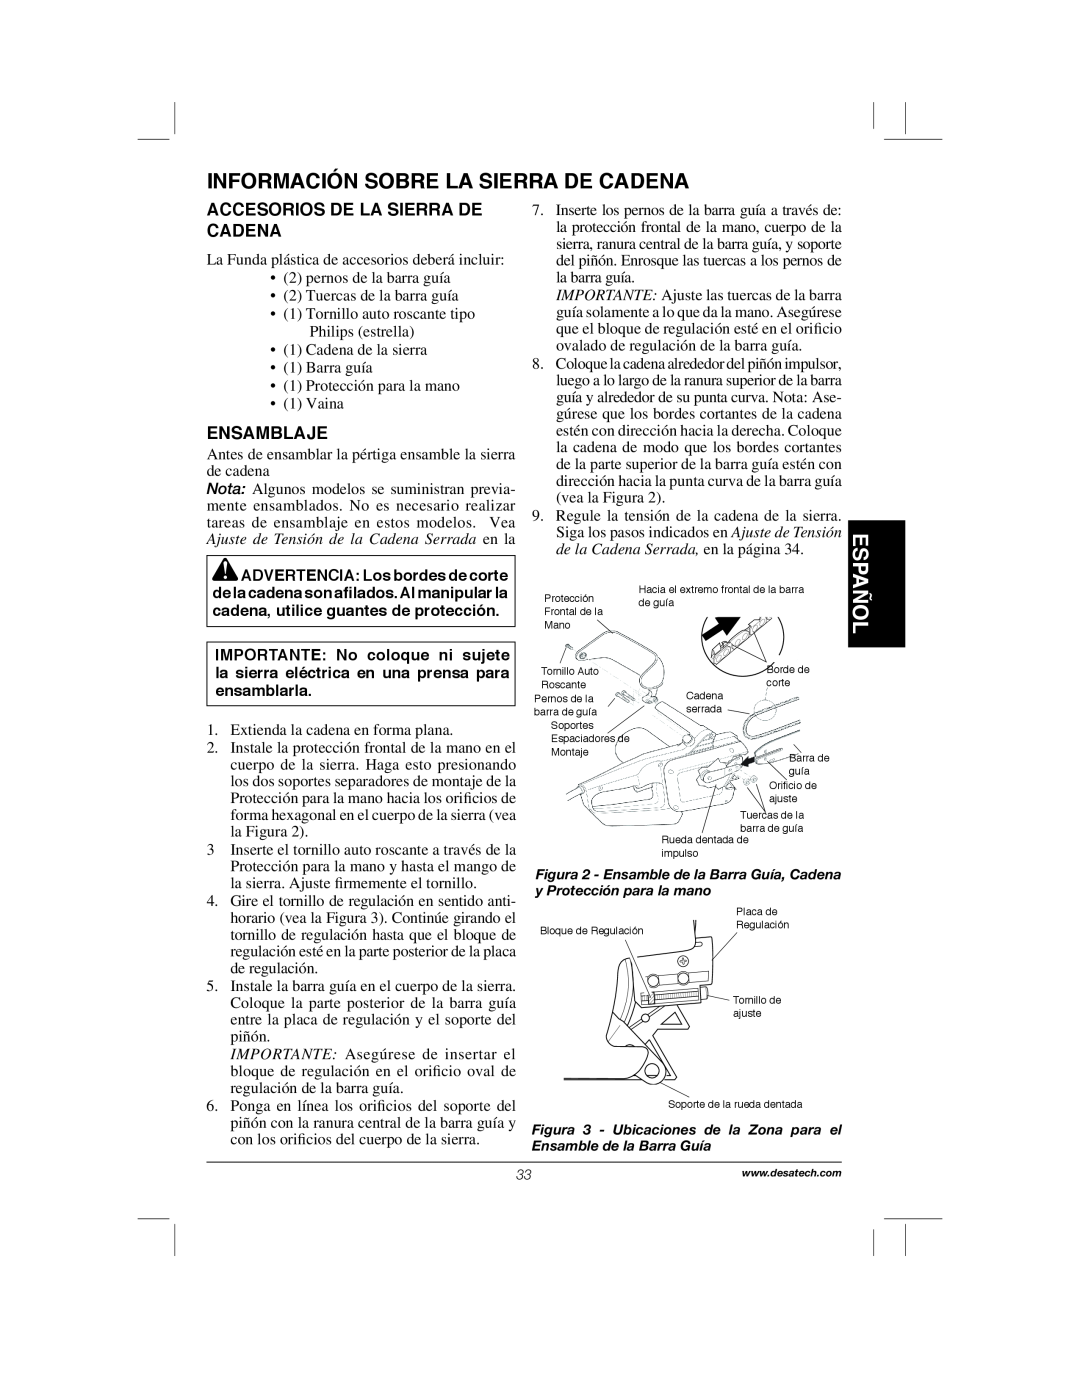 Remington Power Tools 104317, PS1510A Información Sobre La Sierra De Cadena, Español, Accesorios De La Sierra De Cadena 